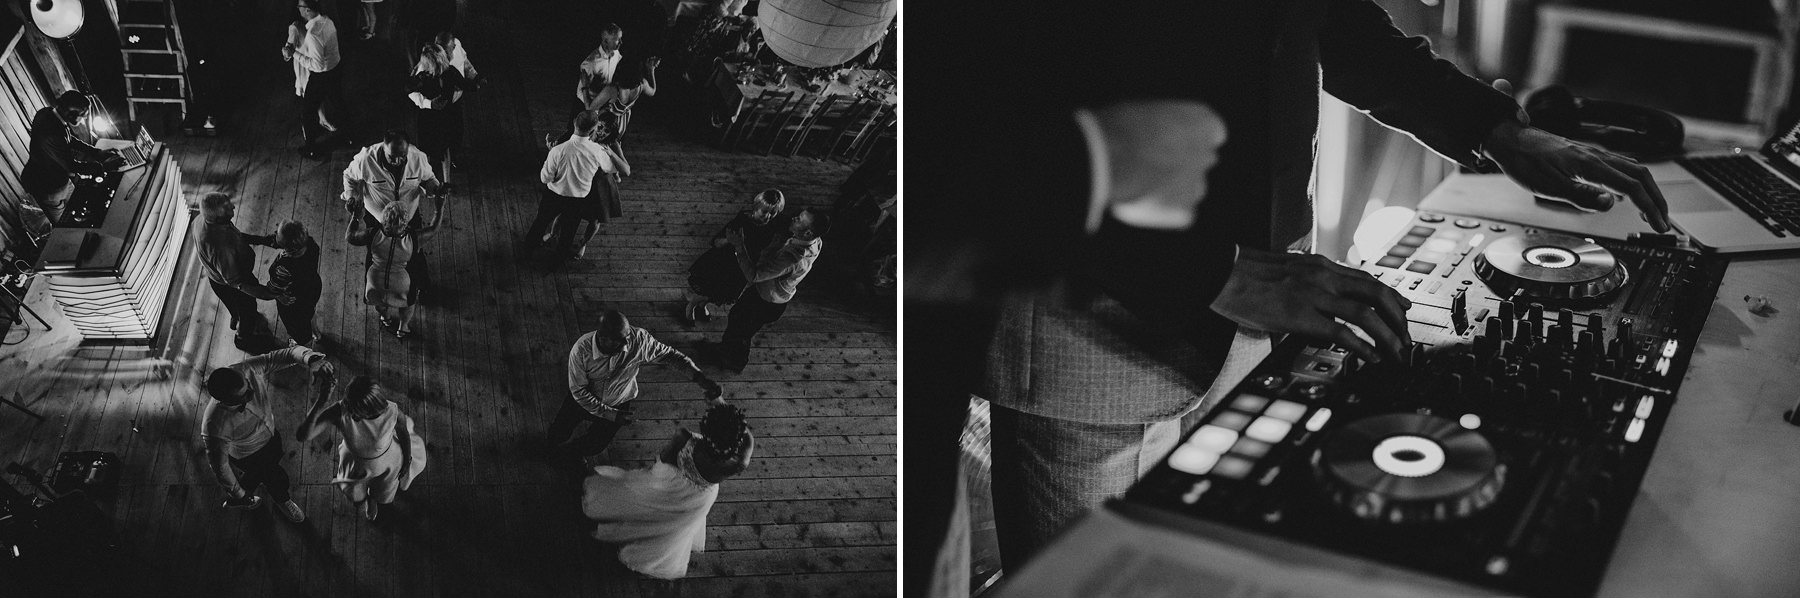 287 folwark wiazy wesele w stodole krakow slub plenerowy fotograf slubny karol nycz photography